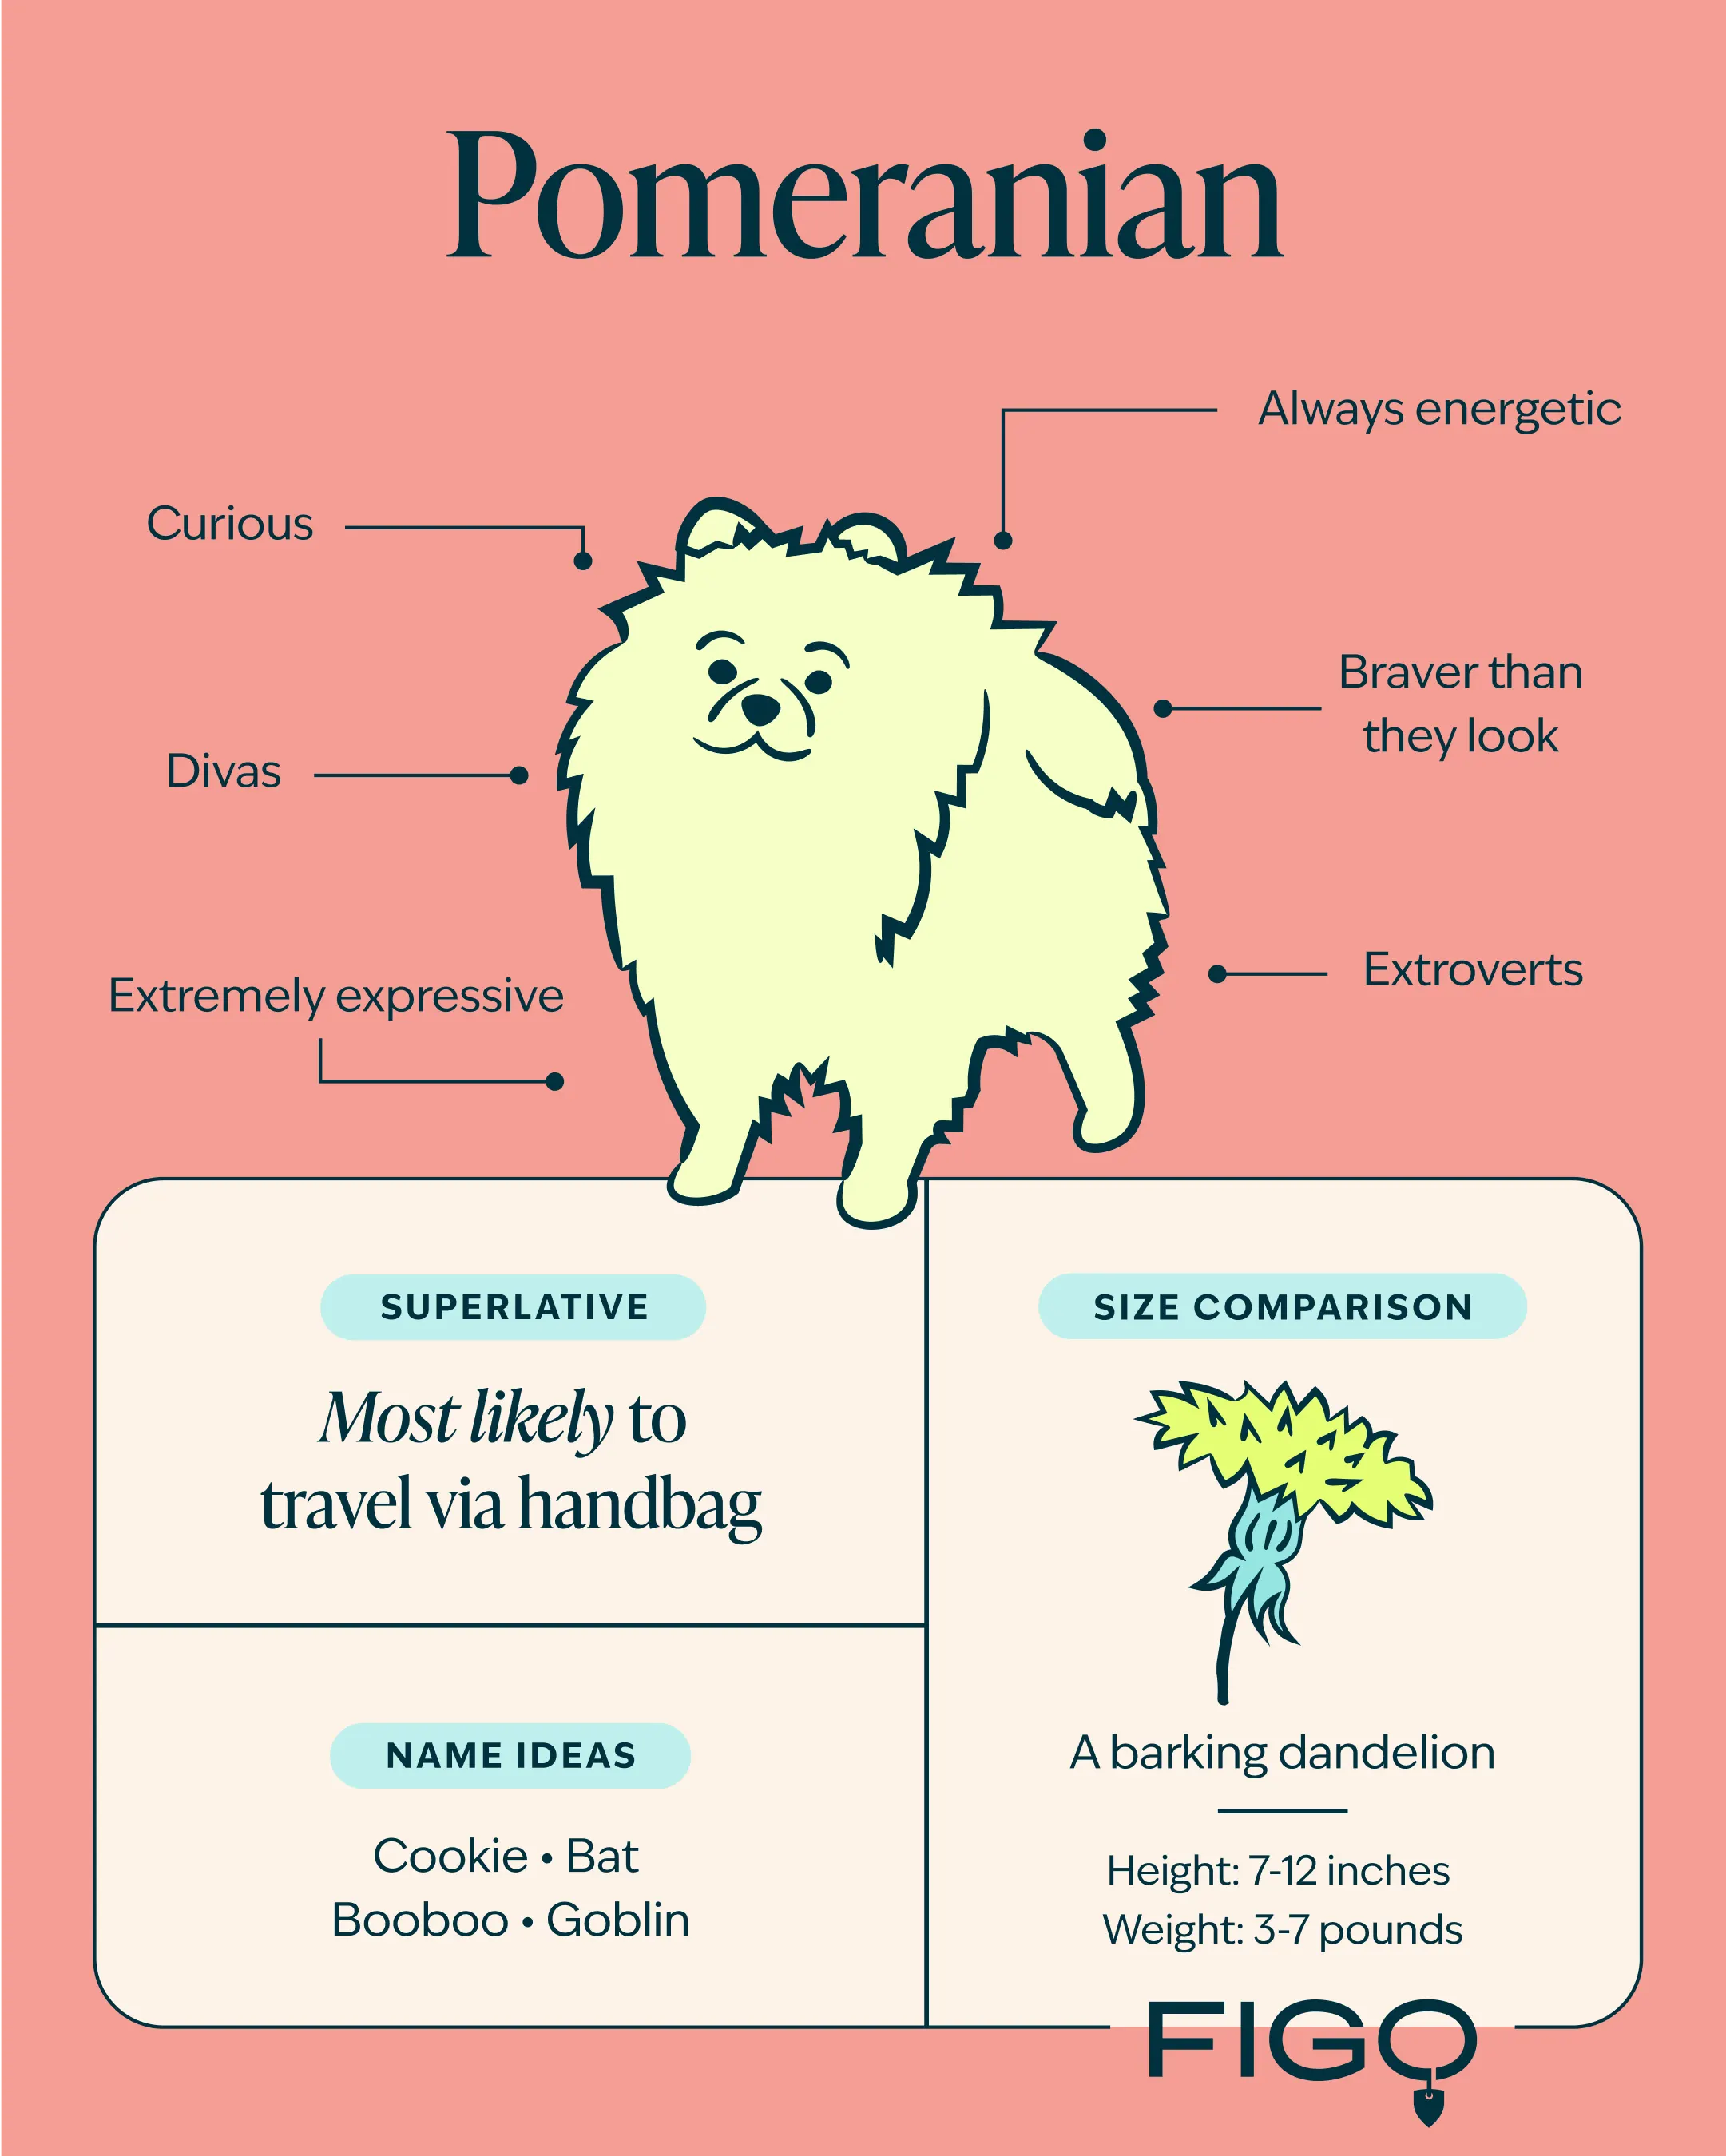 Pomeranian breed guide